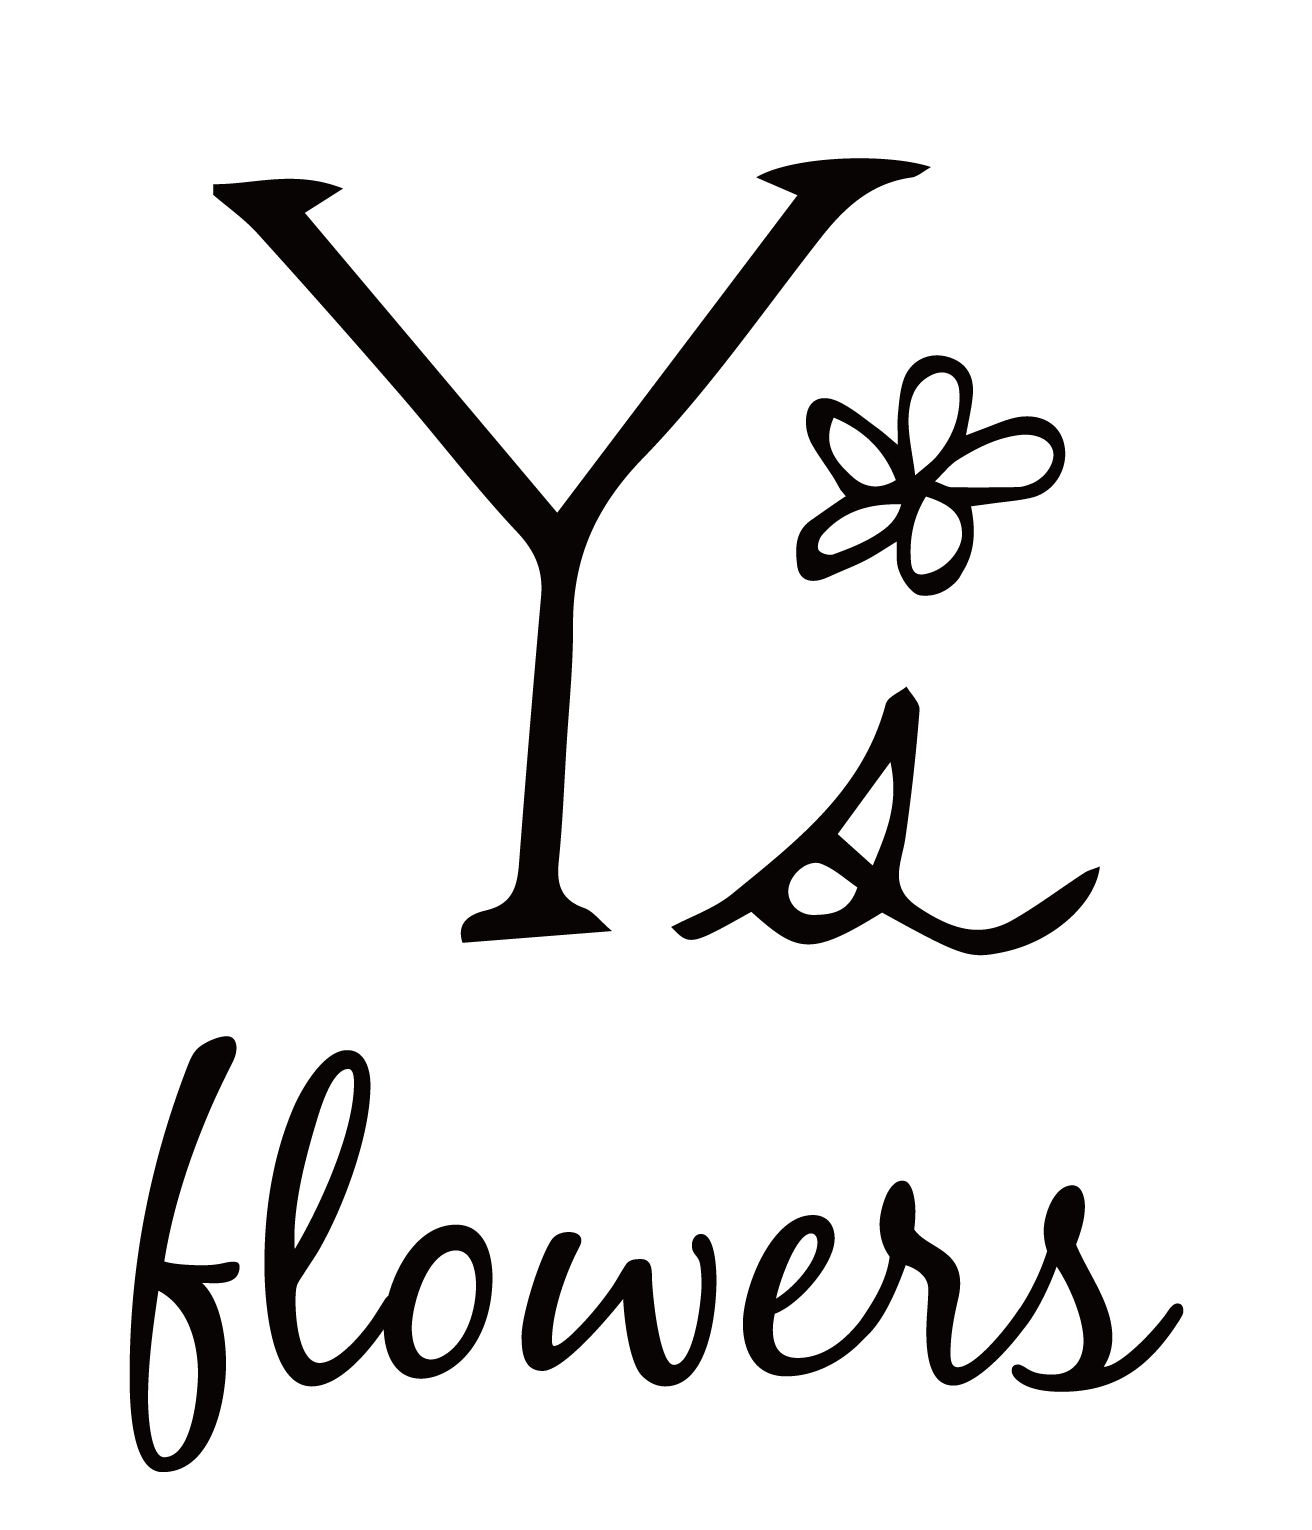 Y's flowers